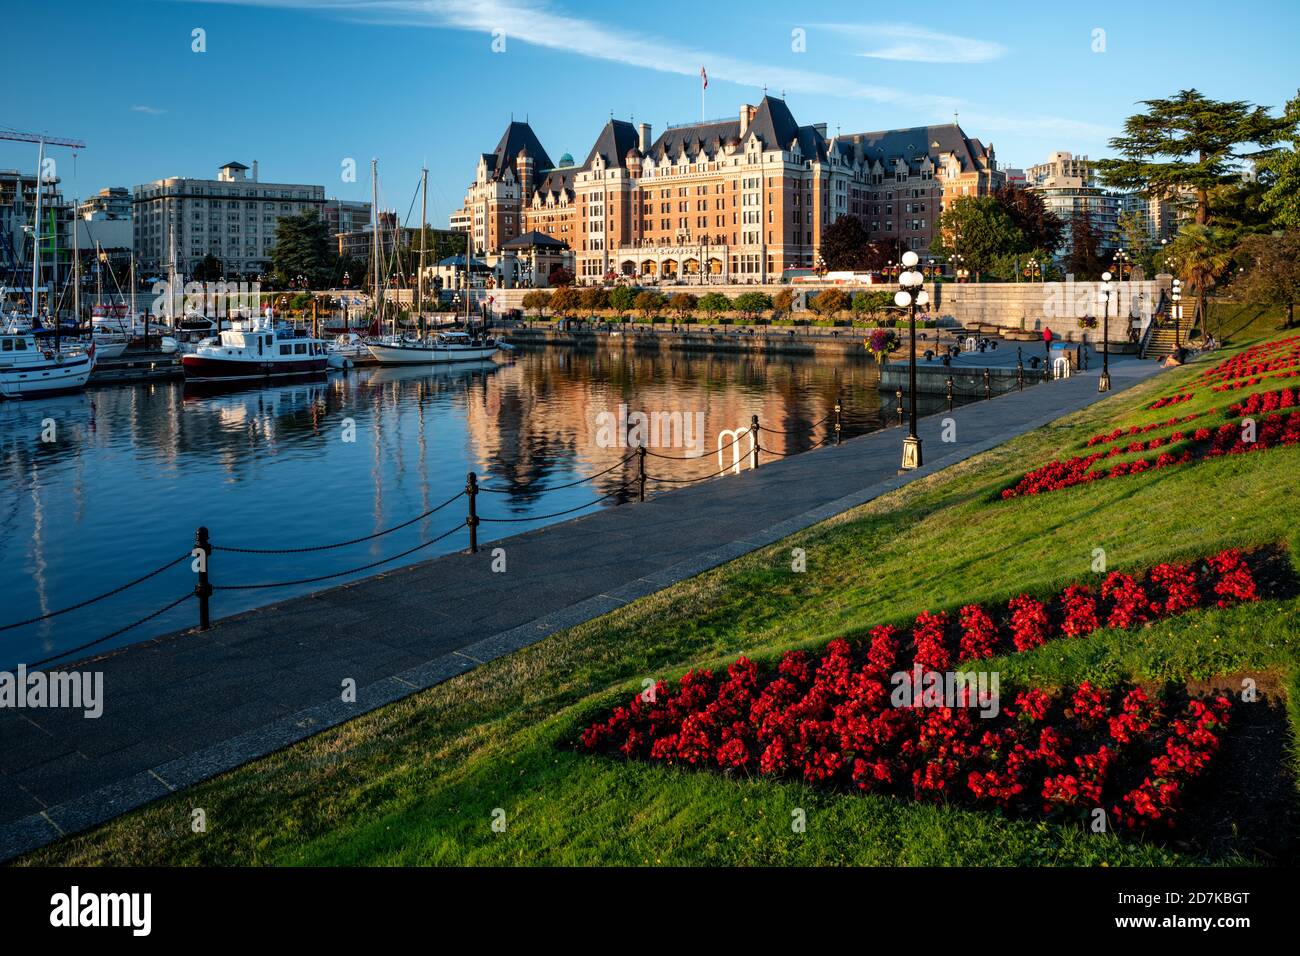 VICTORIA, CANADA - Jul 08, 2020: The Empress in the Victoria Inner Harbour, Victoria, BC Canada Stock Photo